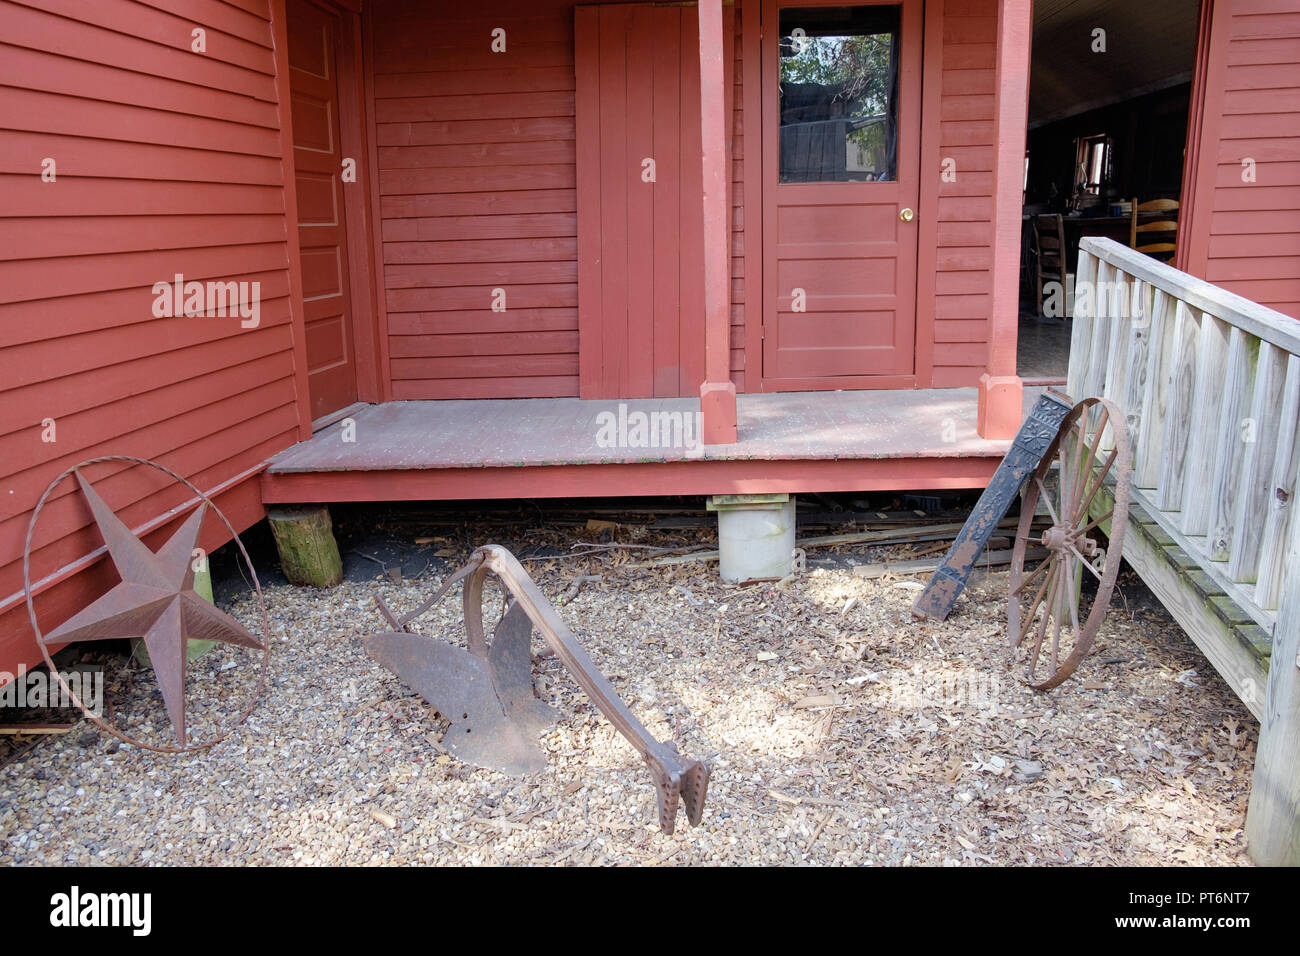 Zurück von alten, roten Holzhaus. Two-Bit Taylor Inn mit Eisen Texas Stern, & alte Wagenrad. Tür öffnen. Chestnut Square Historic Village, McKinney Texas. Stockfoto